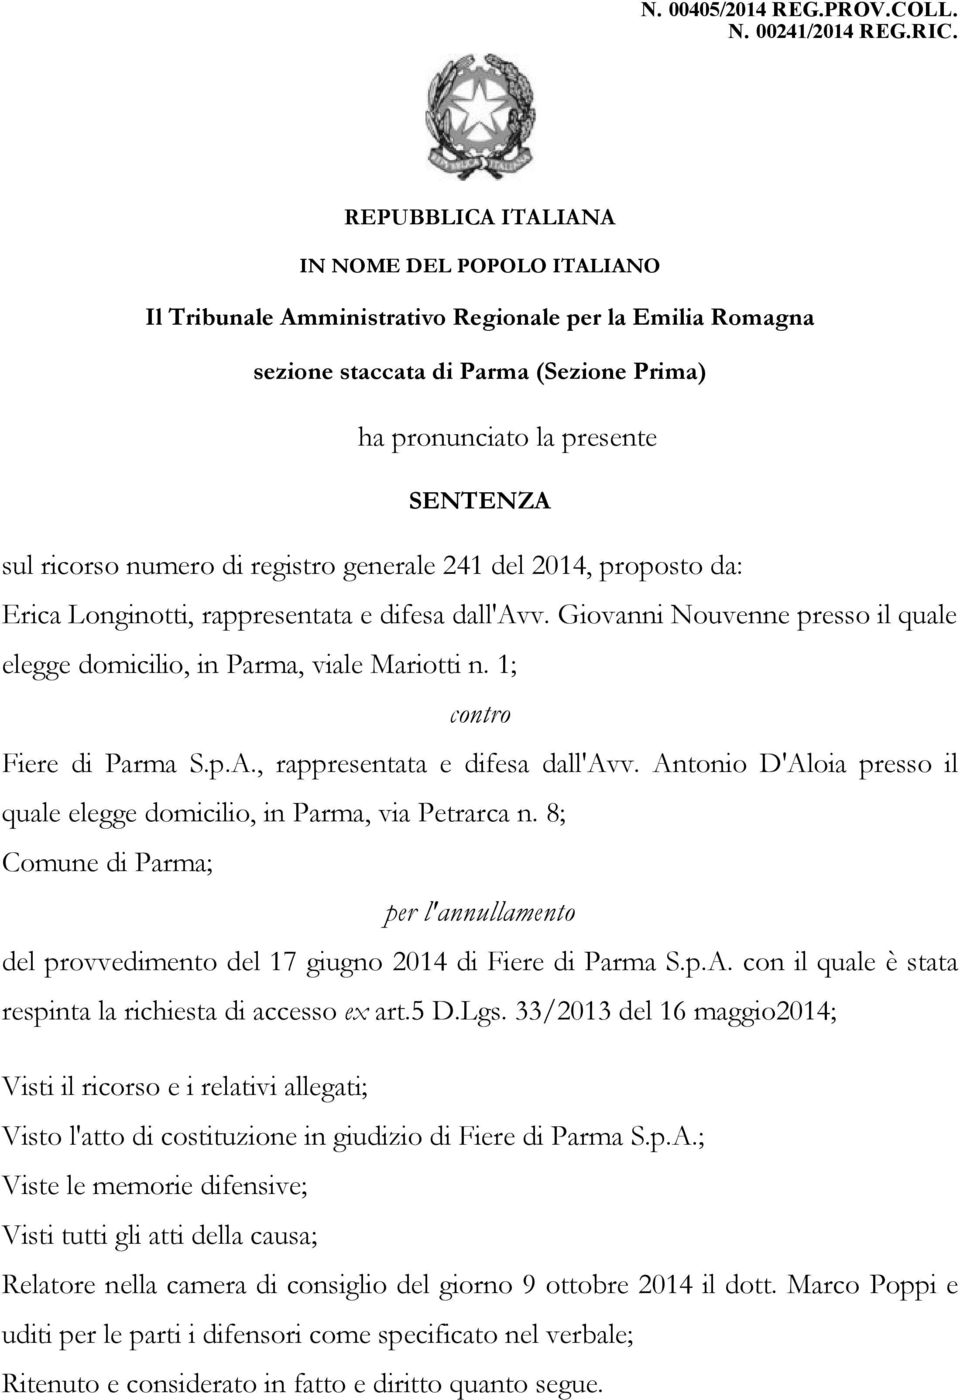 numero di registro generale 241 del 2014, proposto da: Erica Longinotti, rappresentata e difesa dall'avv. Giovanni Nouvenne presso il quale elegge domicilio, in Parma, viale Mariotti n.